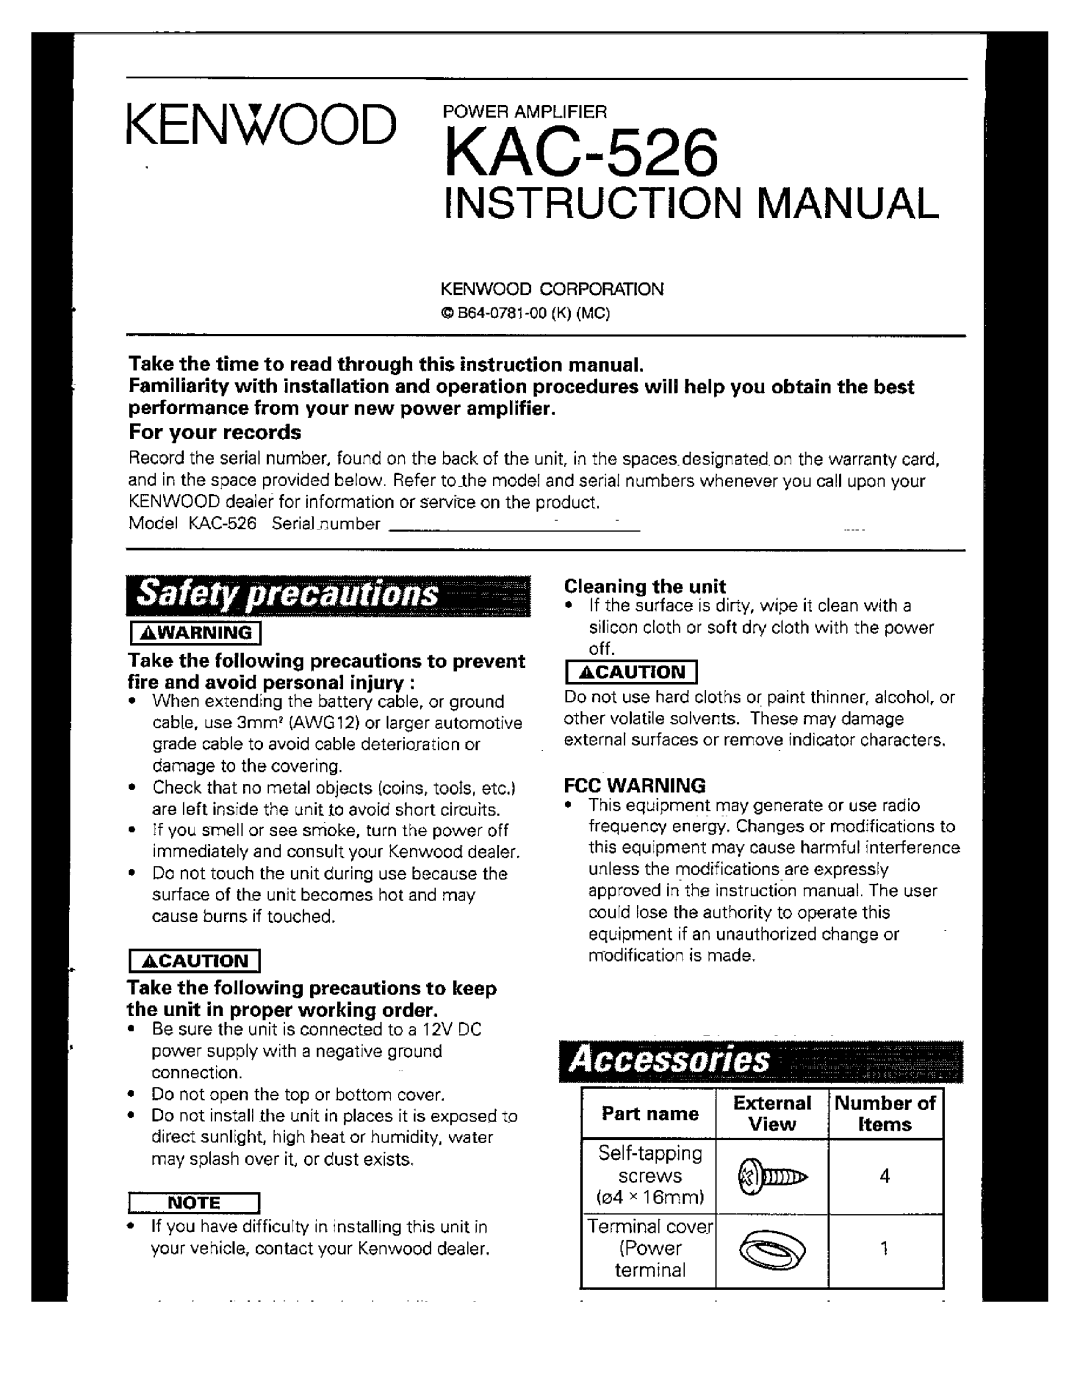 Kenwood KAC-526 manual 